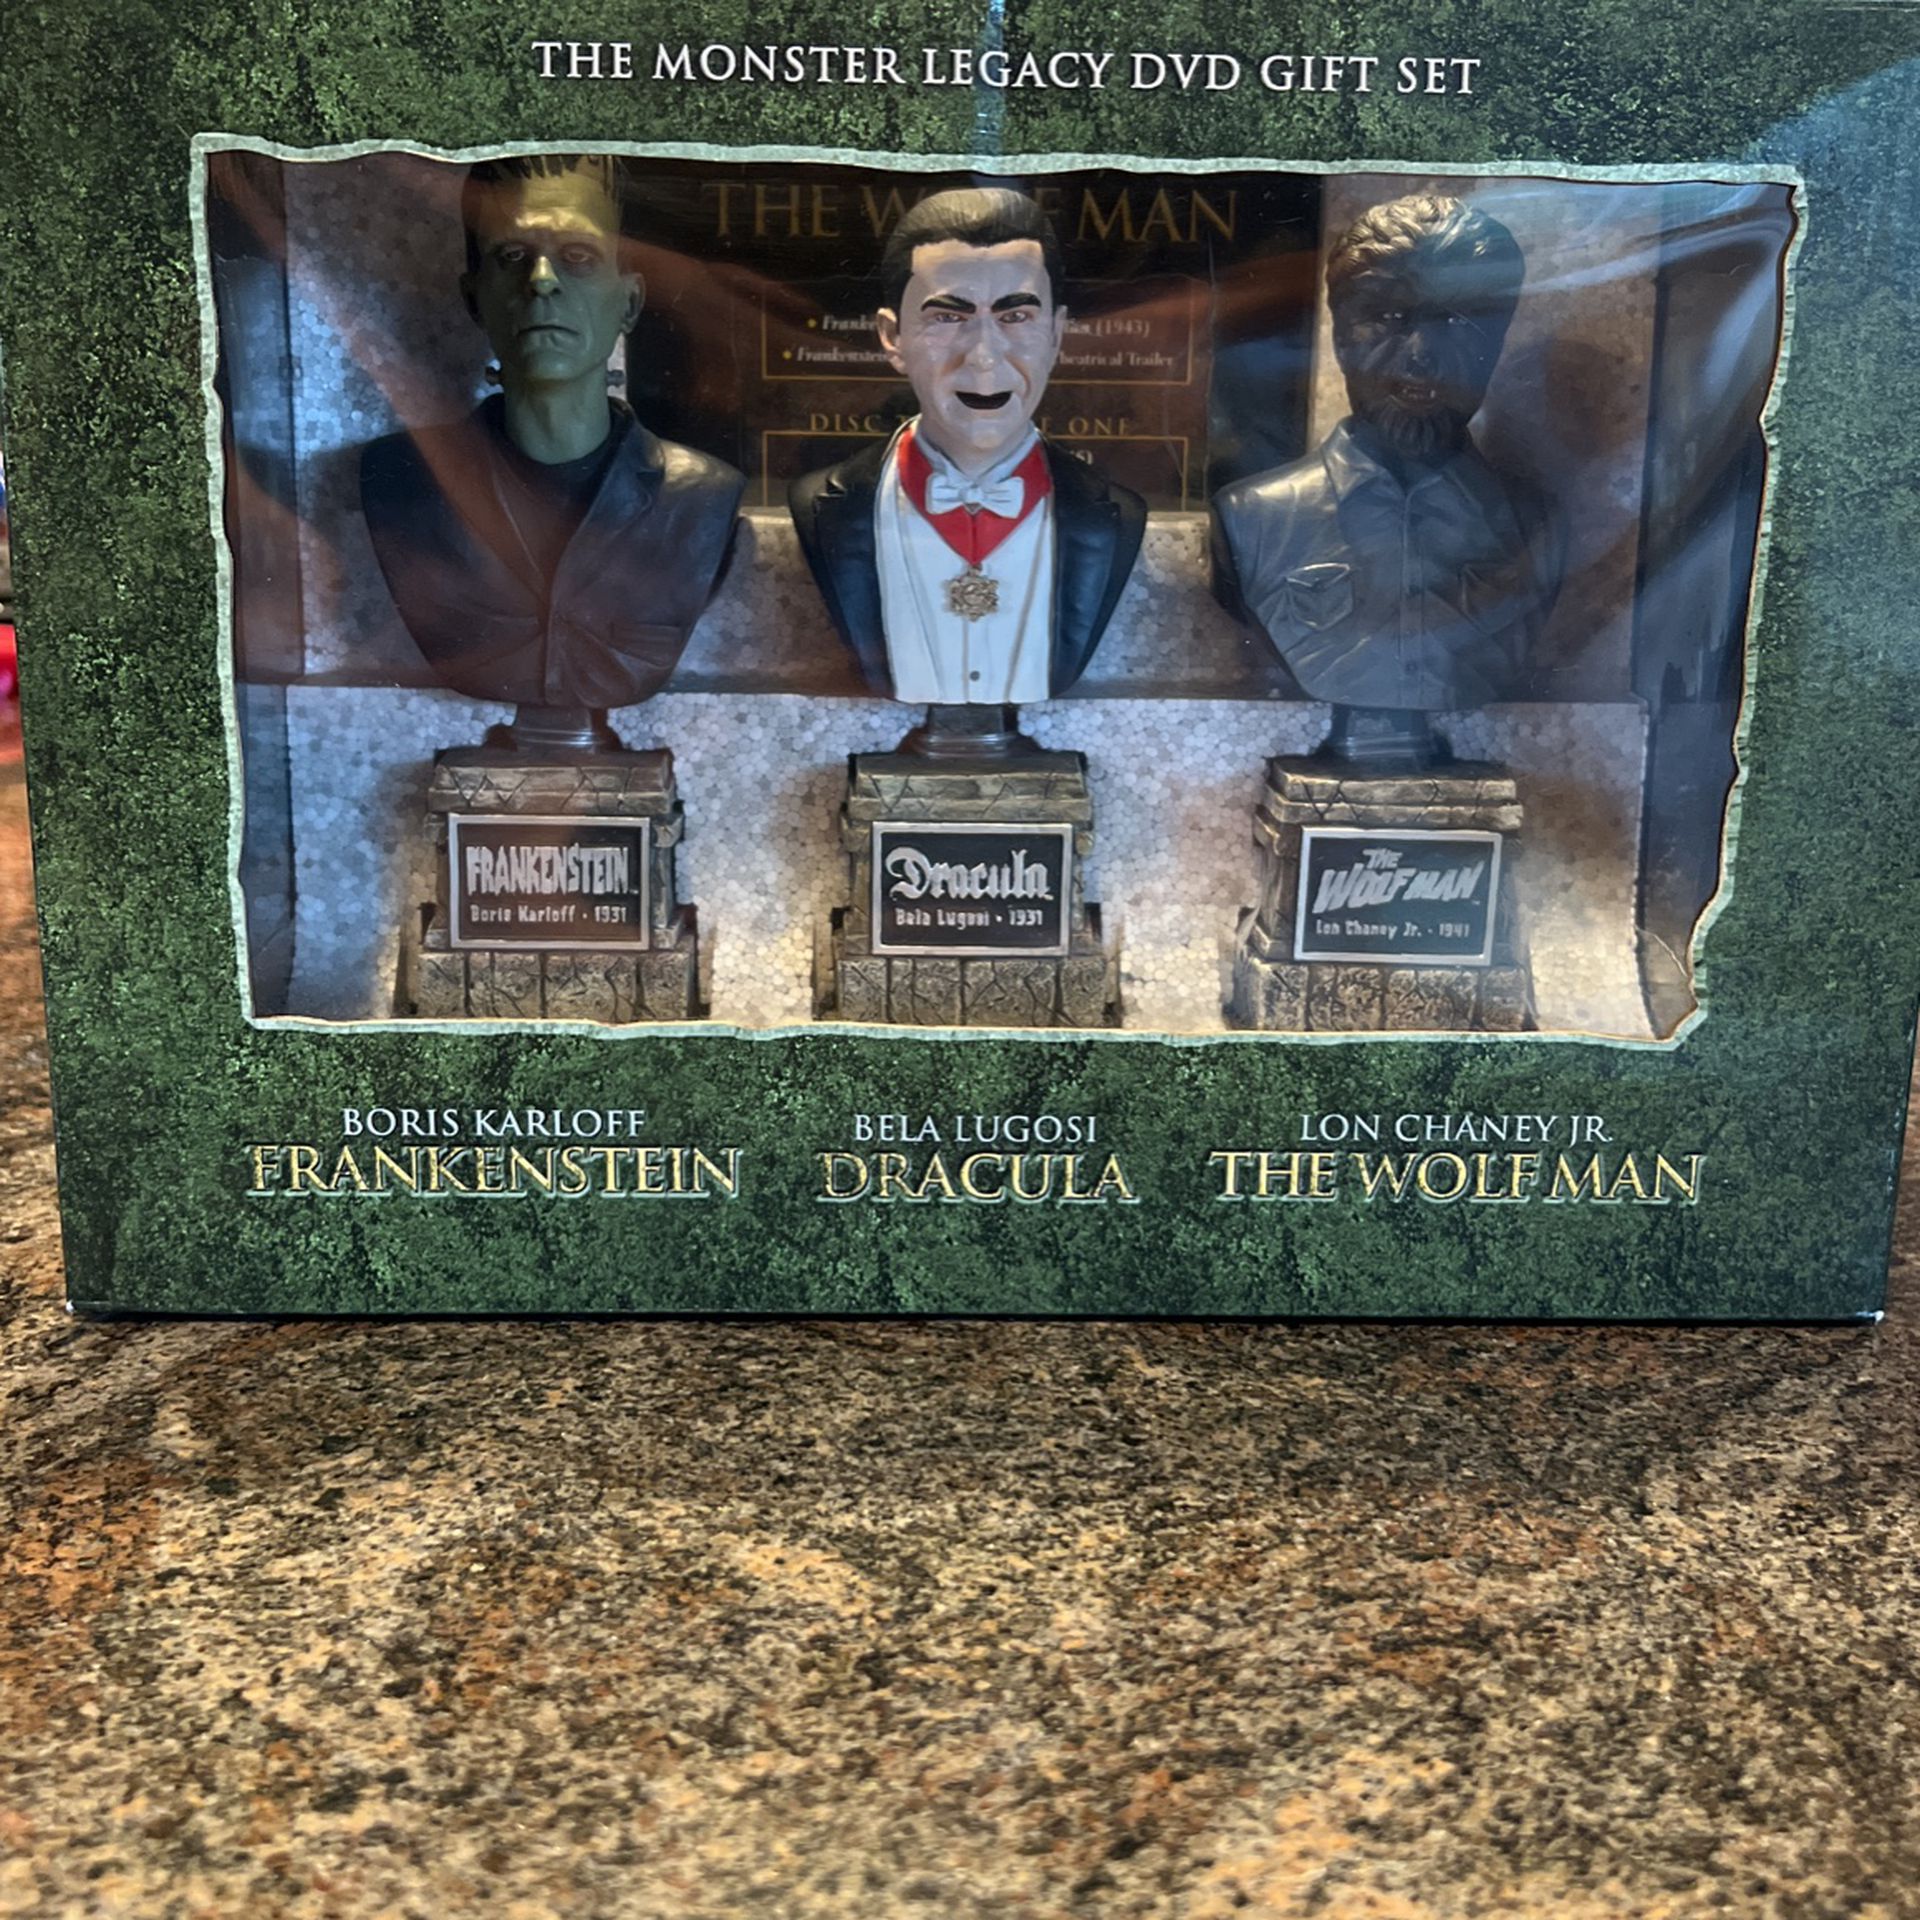 The Monster Legacy DVD Gift Set